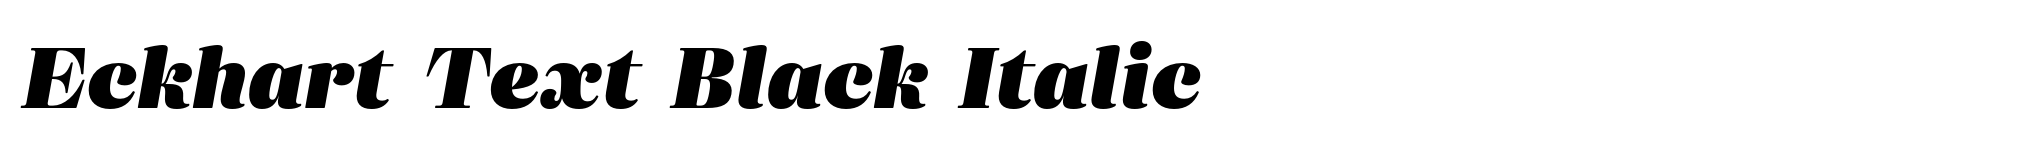 Eckhart Text Black Italic image